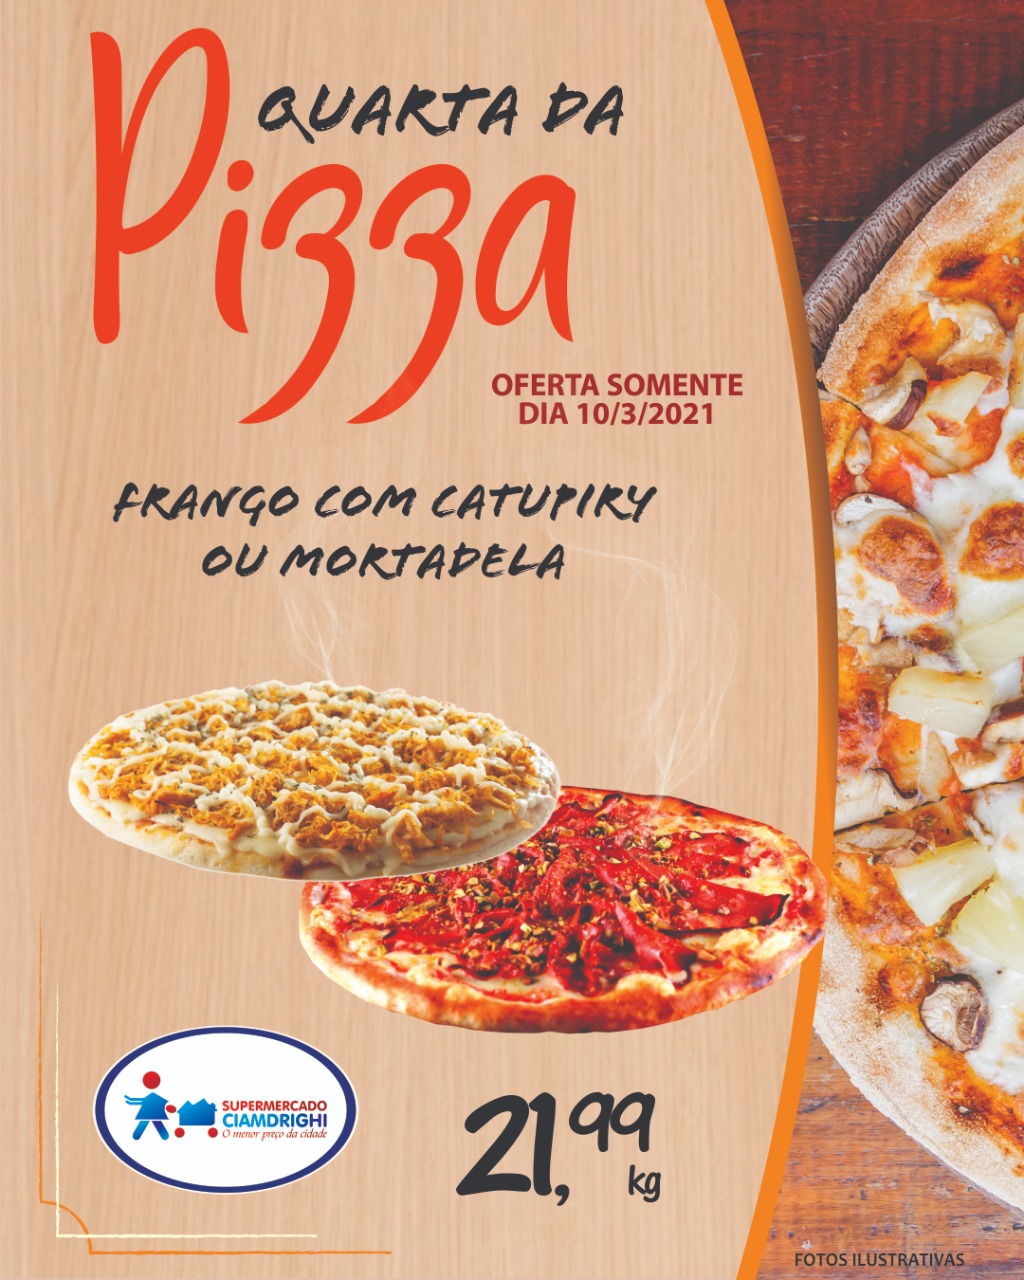 Ciamdrighi tem ofertas em pizzas e hortifrúti para hoje